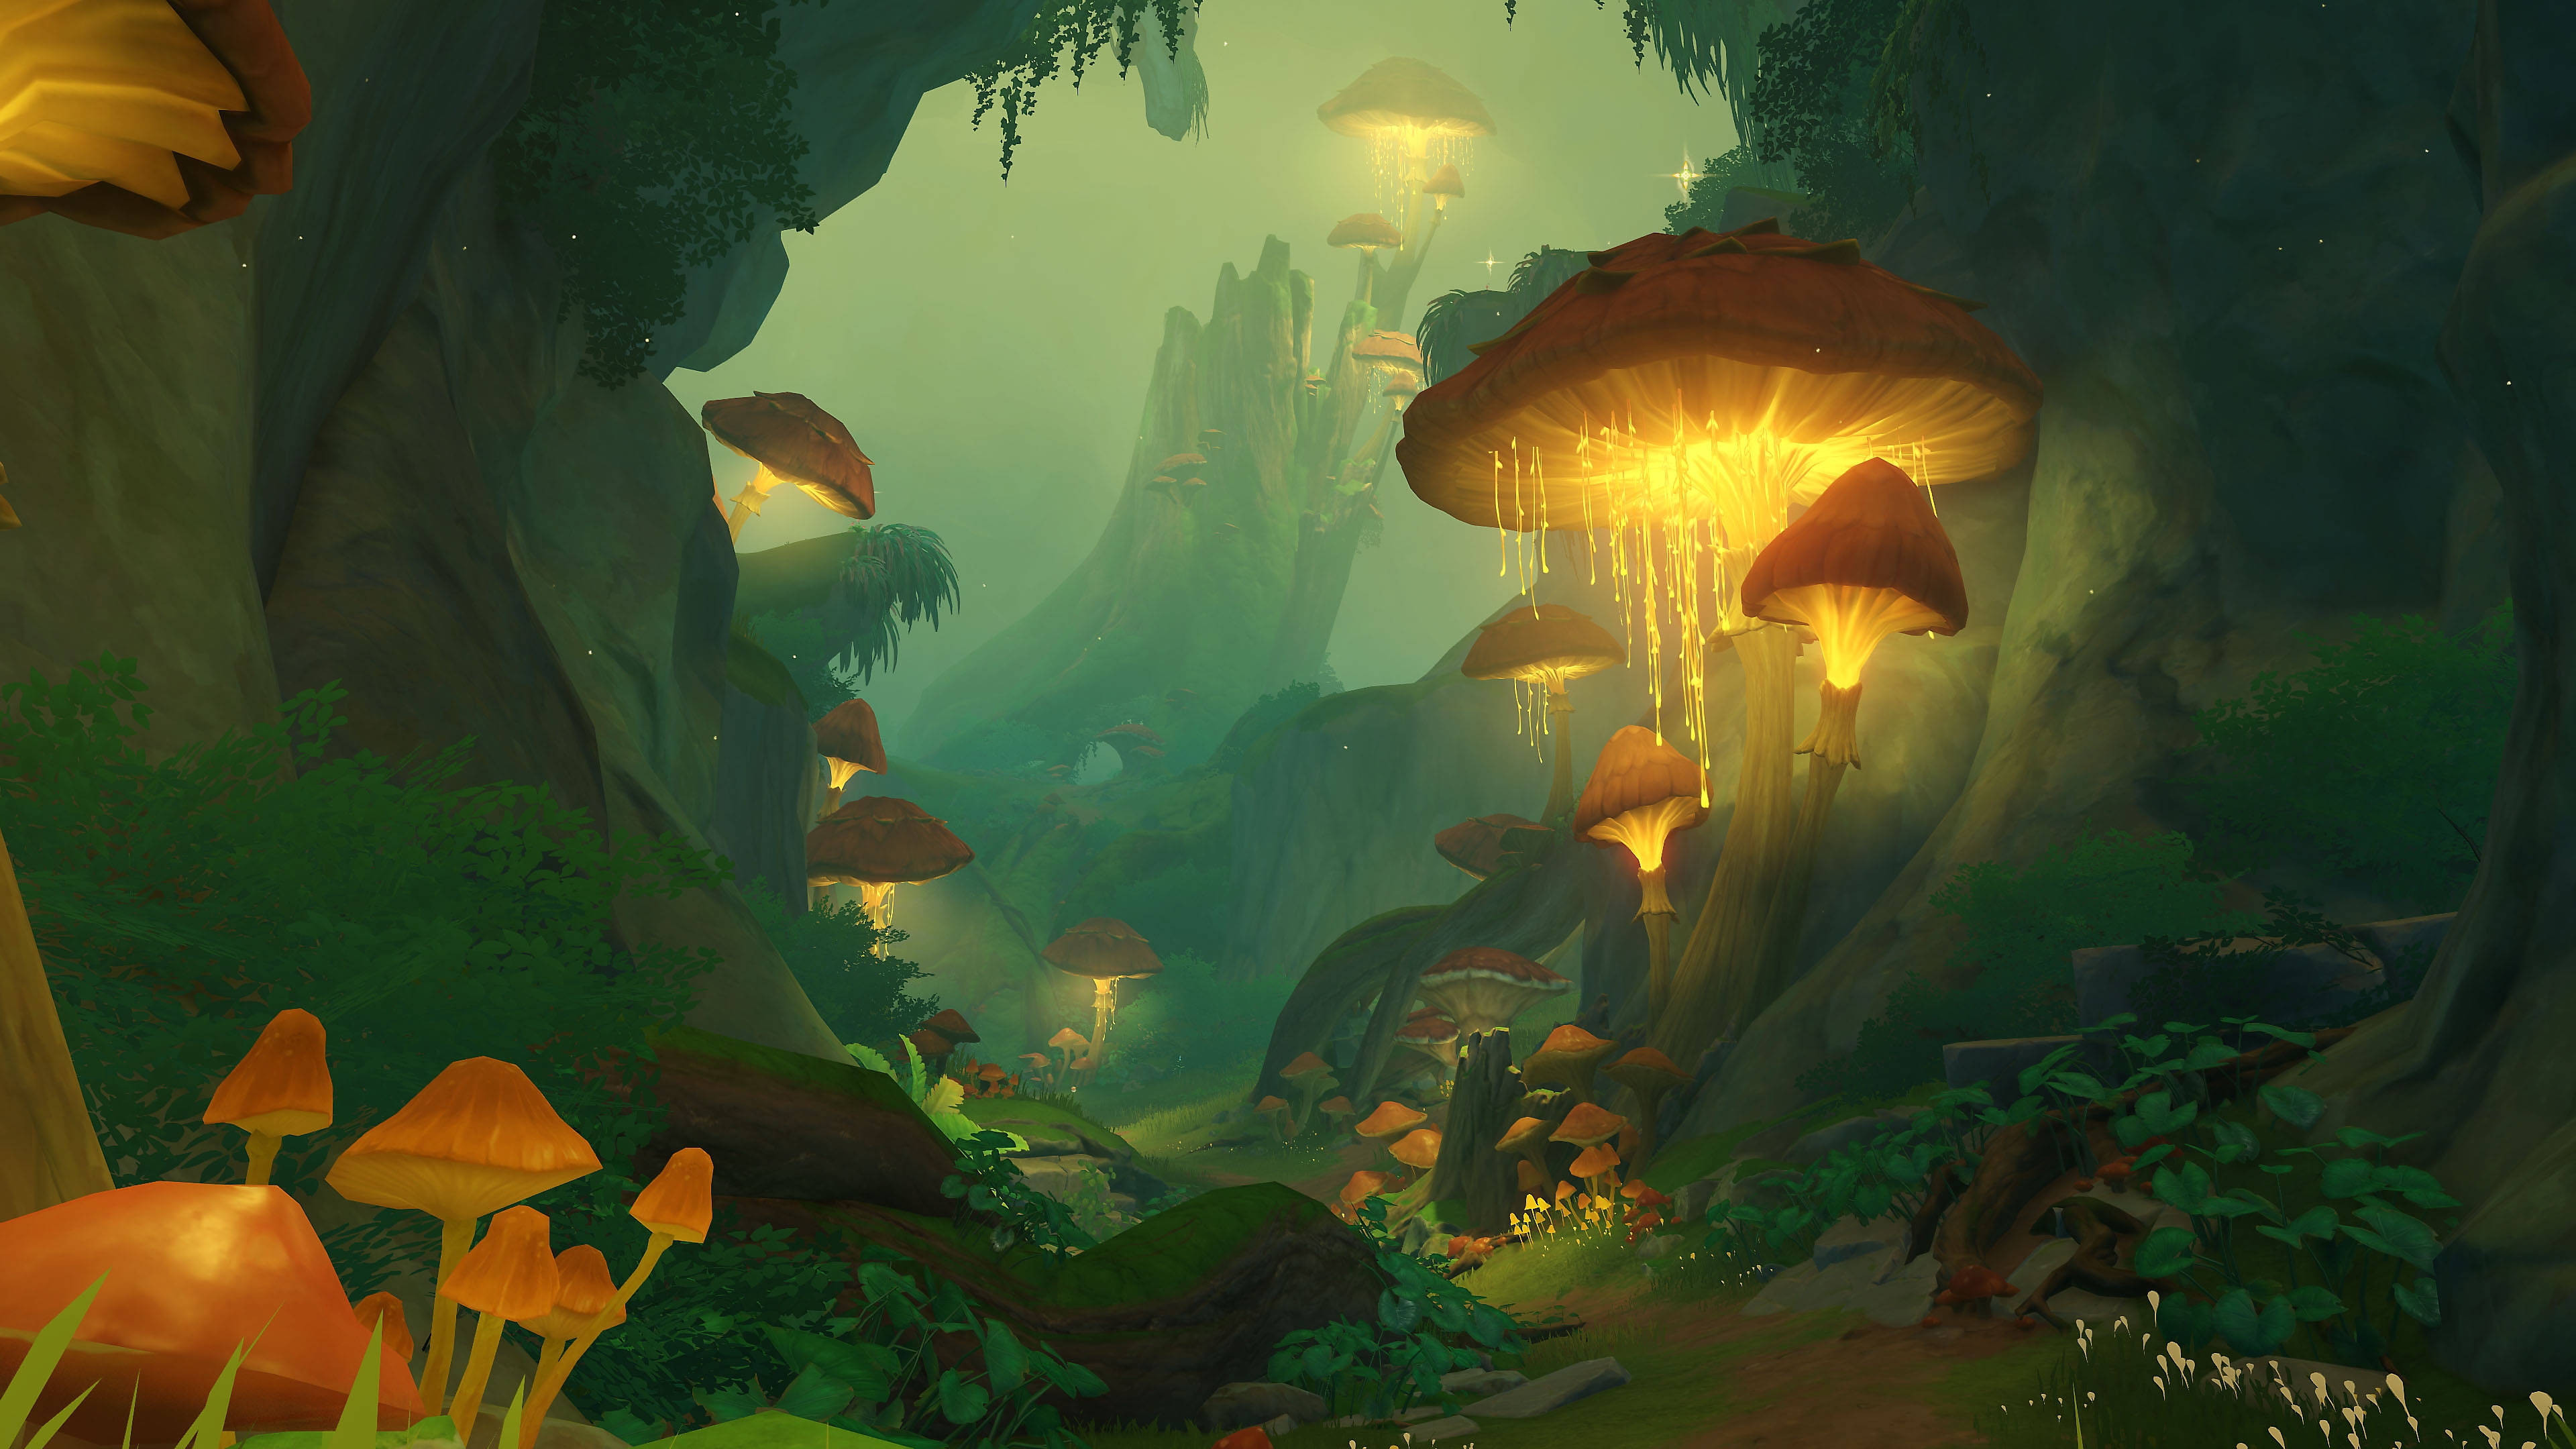 Impacto de GenShin: Captura de pantalla de la actualización 3.0 que muestra una escena de selva tropical con hongos brillantes